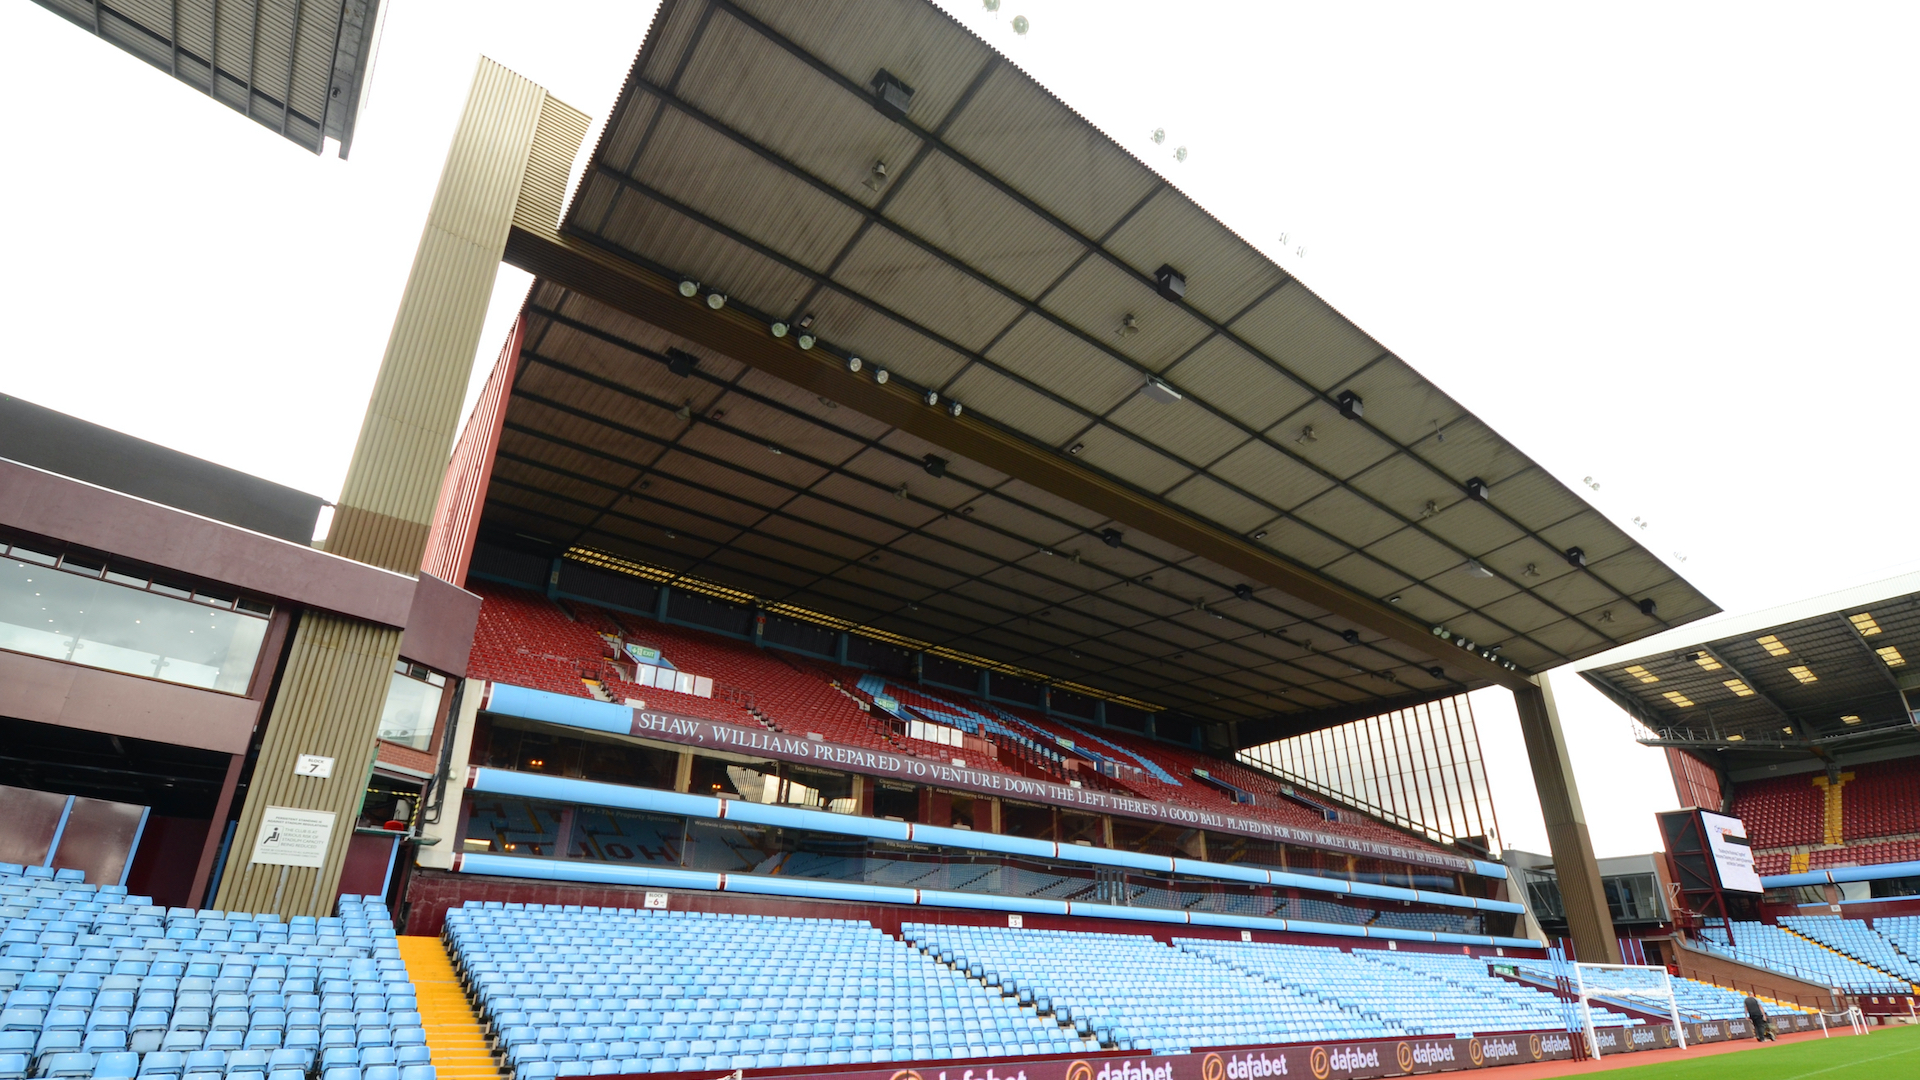 Aston Villa's ground